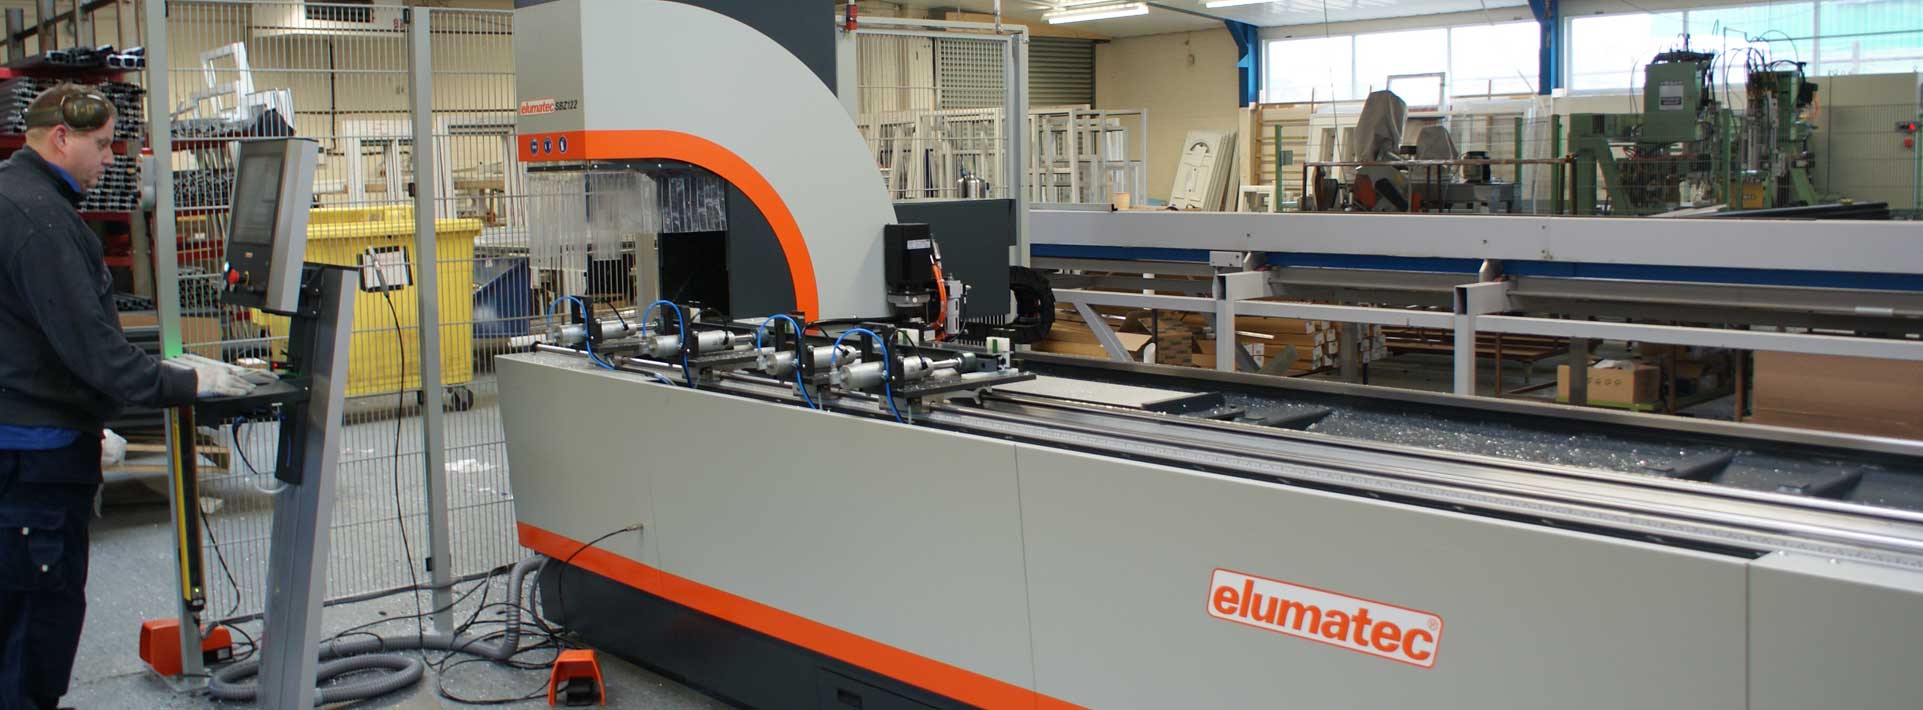 Elumatec aluminium machine